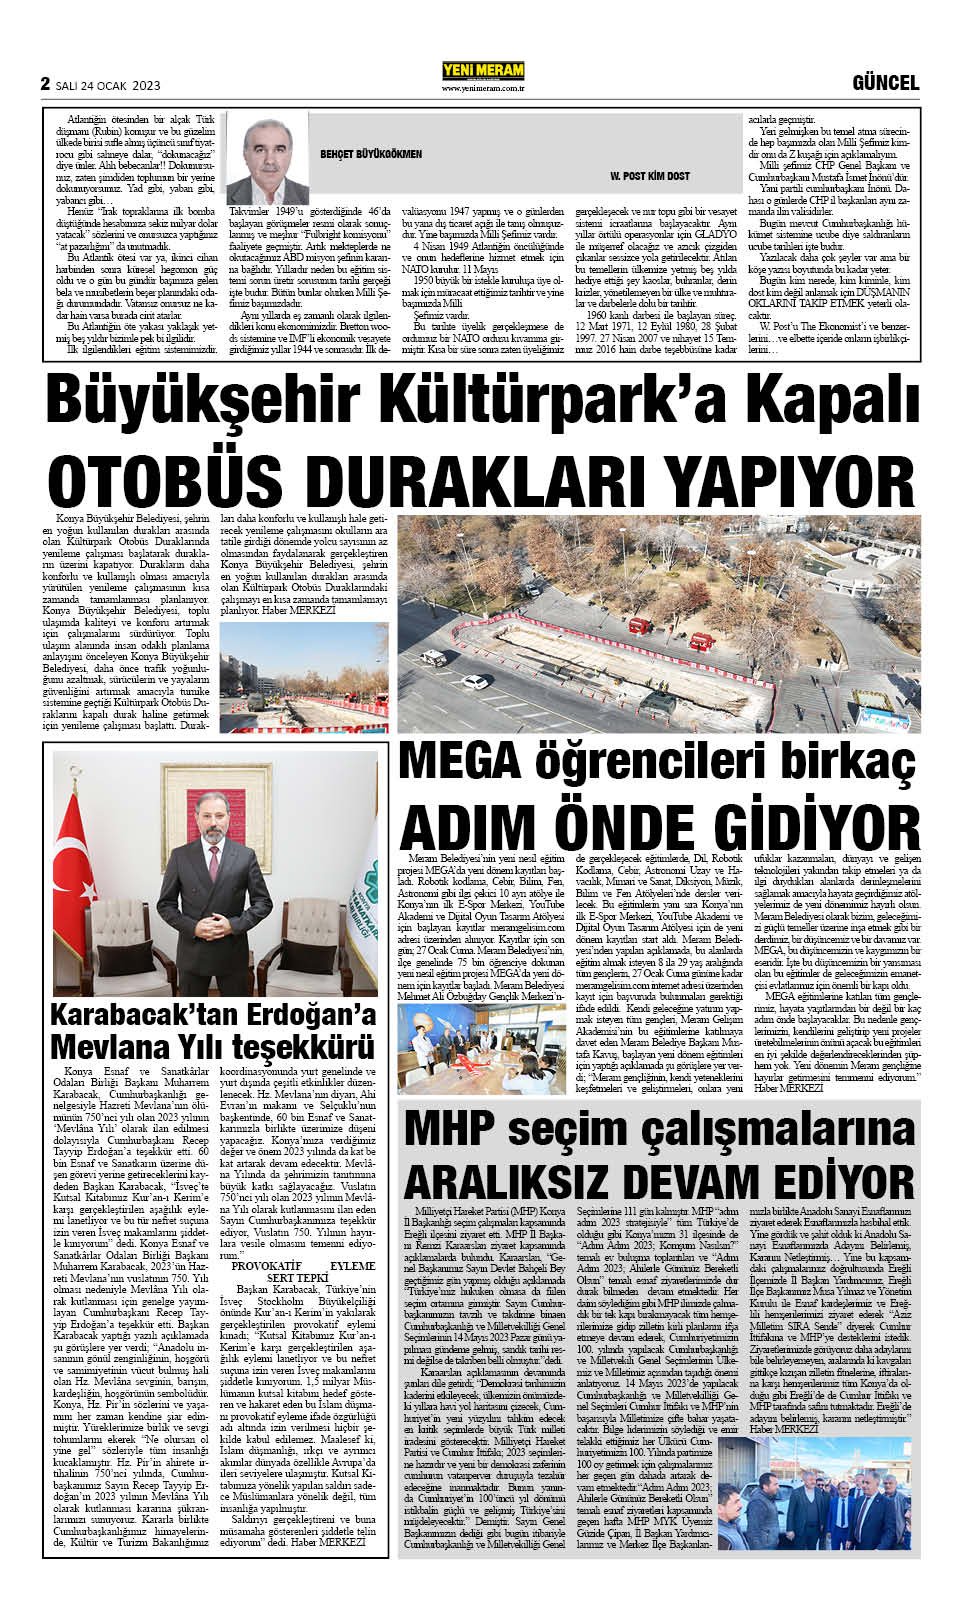 24 Ocak 2023 Yeni Meram Gazetesi
